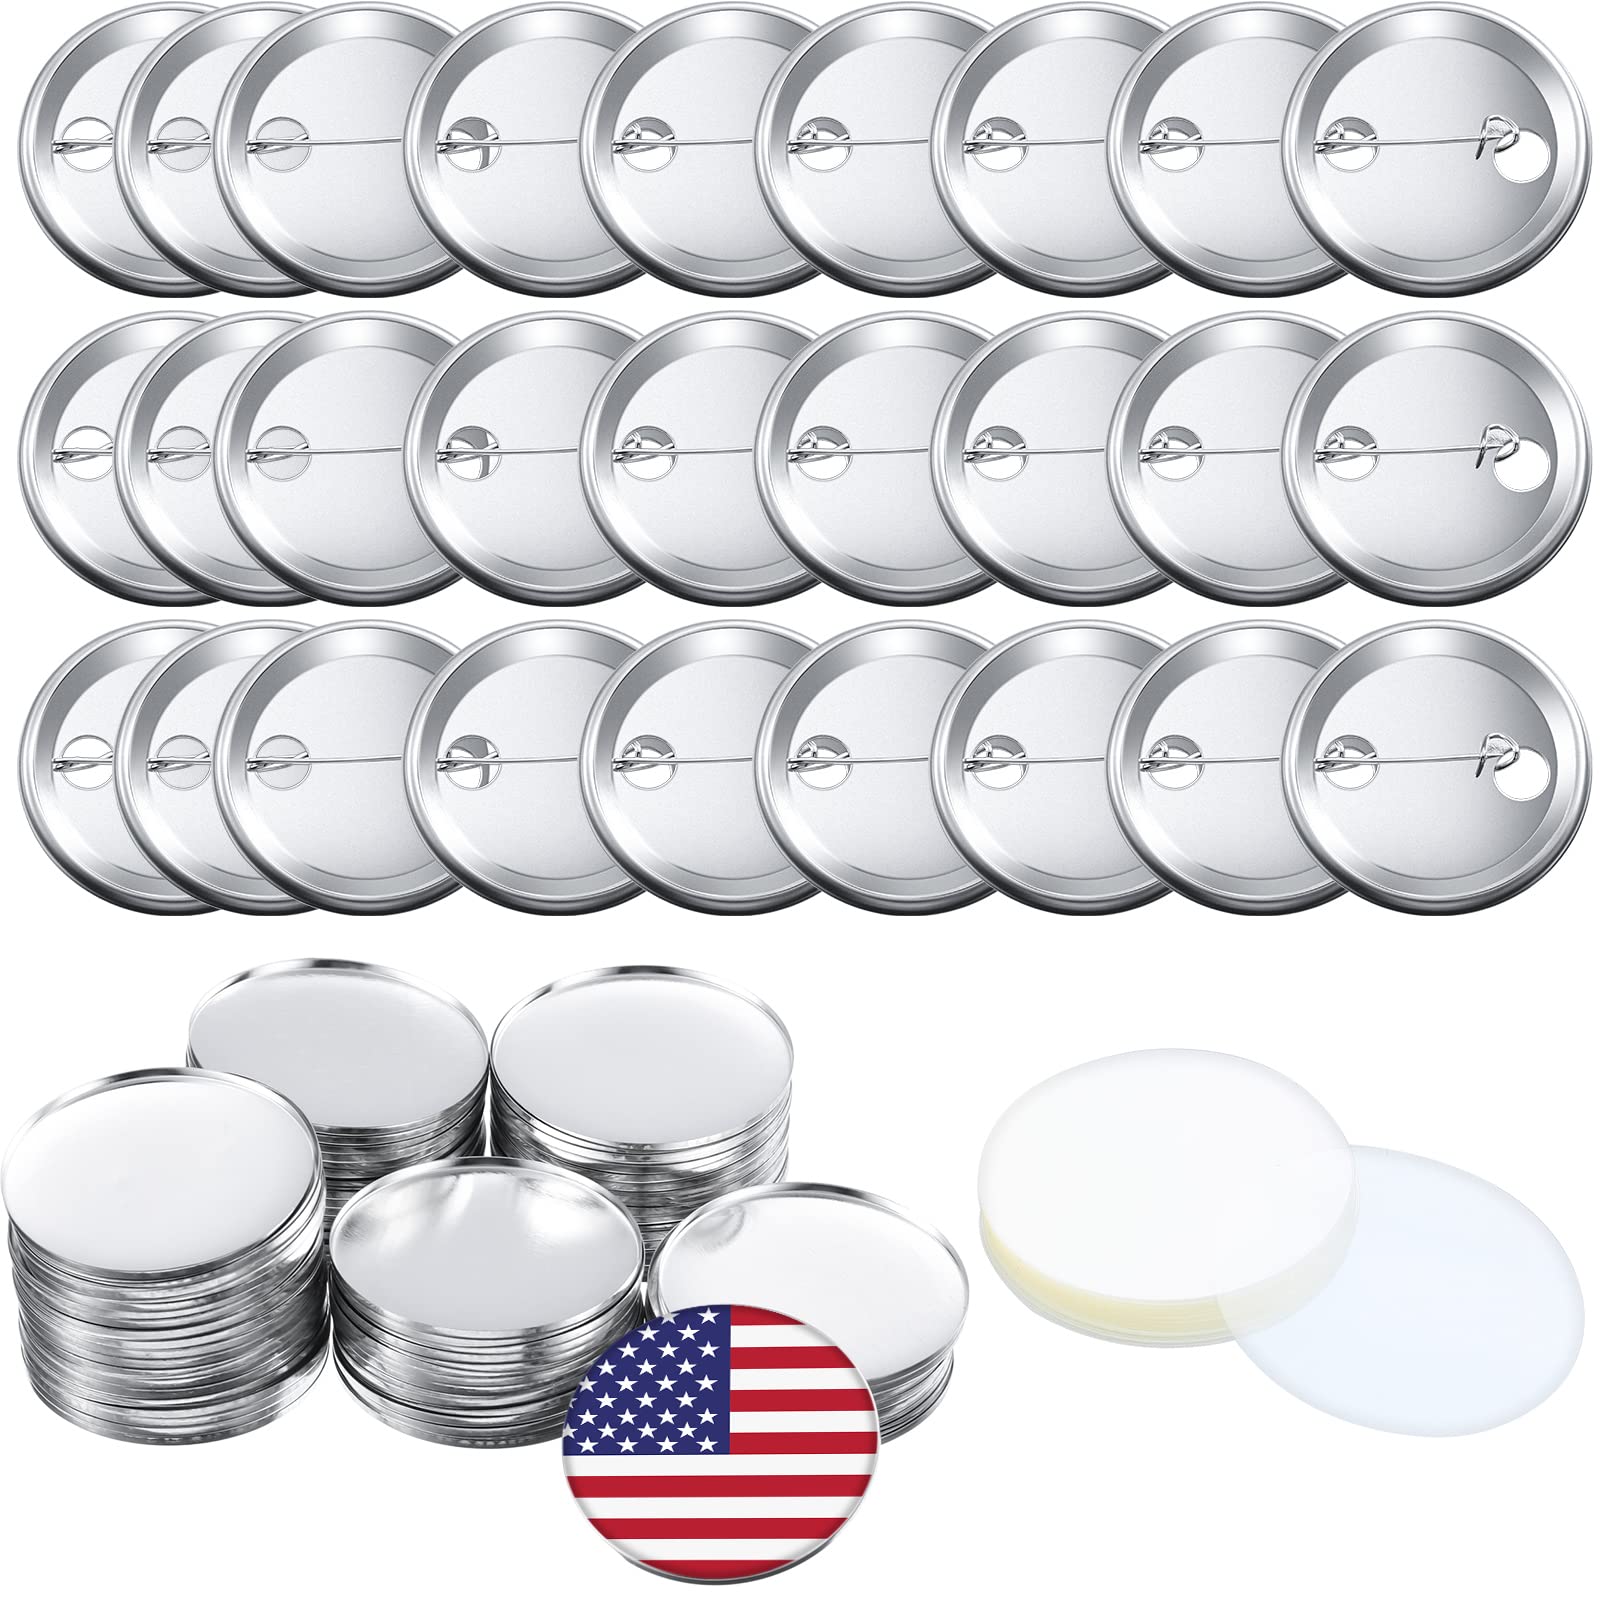 Metal pins buttons diameter 58 mm 100 pcs./pack | GRWERTON